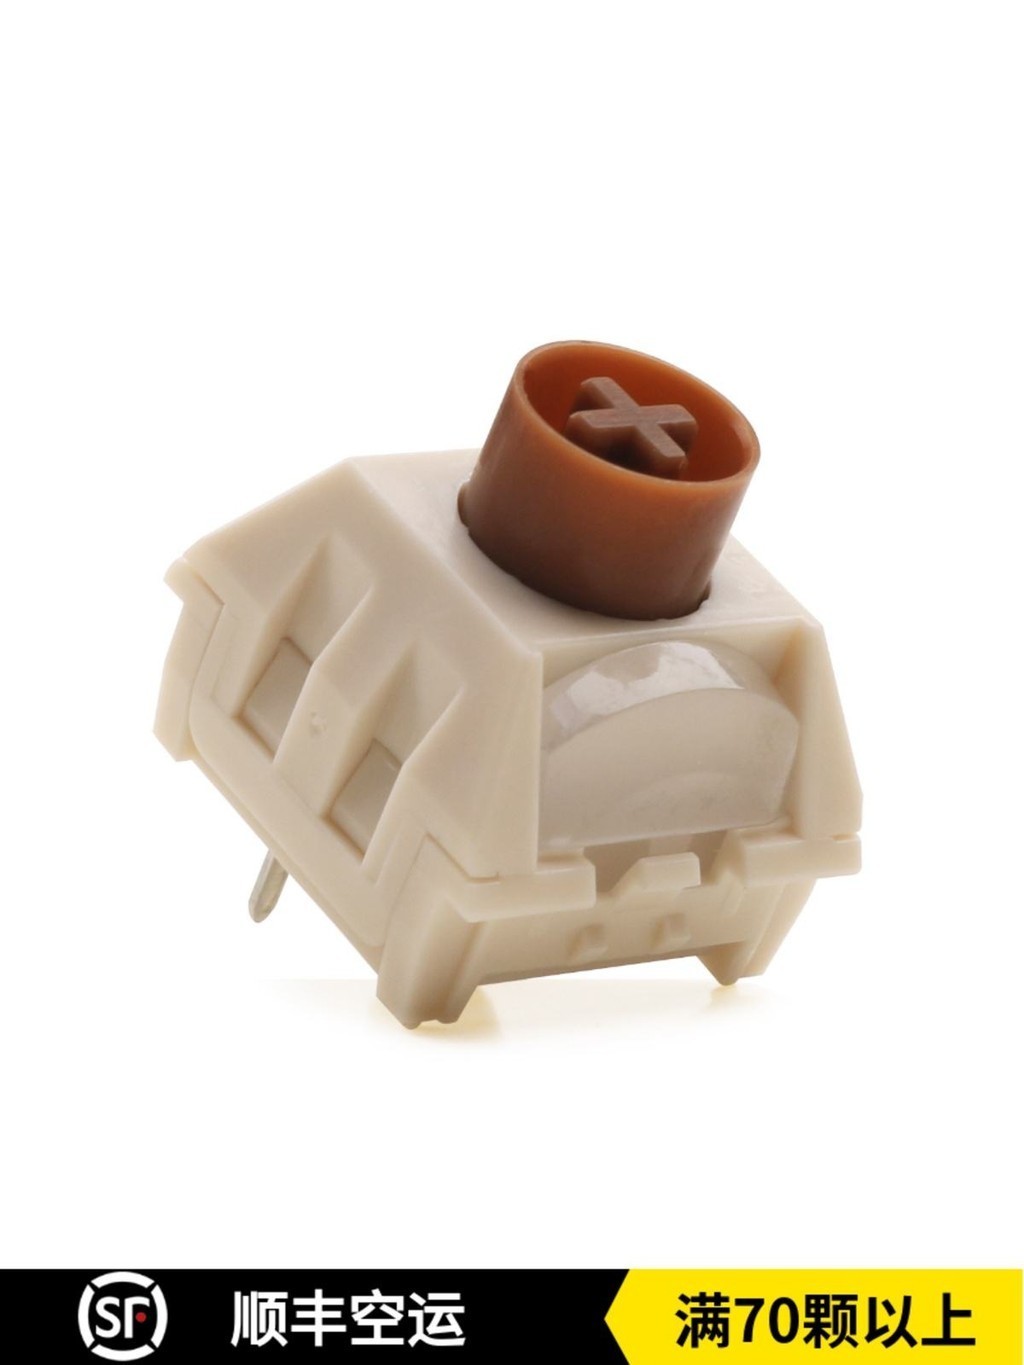 凱華KeydousBOX冰淇淋茶軸熱插拔三腳提前觸發段落軸機械鍵盤軸體